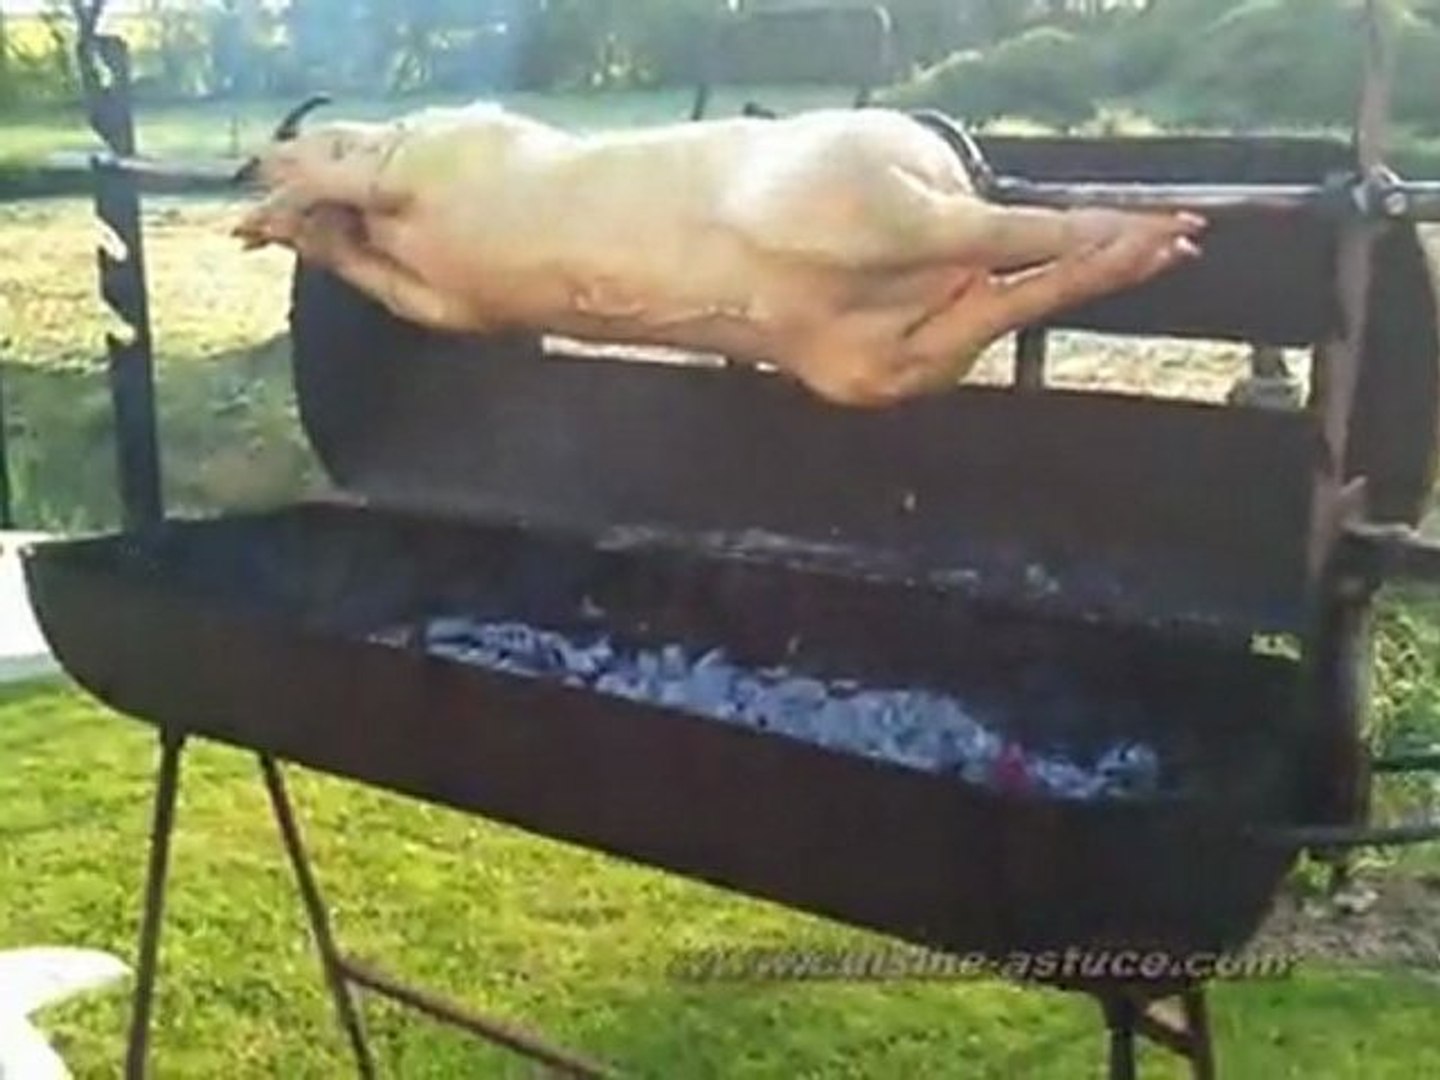 Comment bien nettoyer son barbecue ? - Maître Cochon